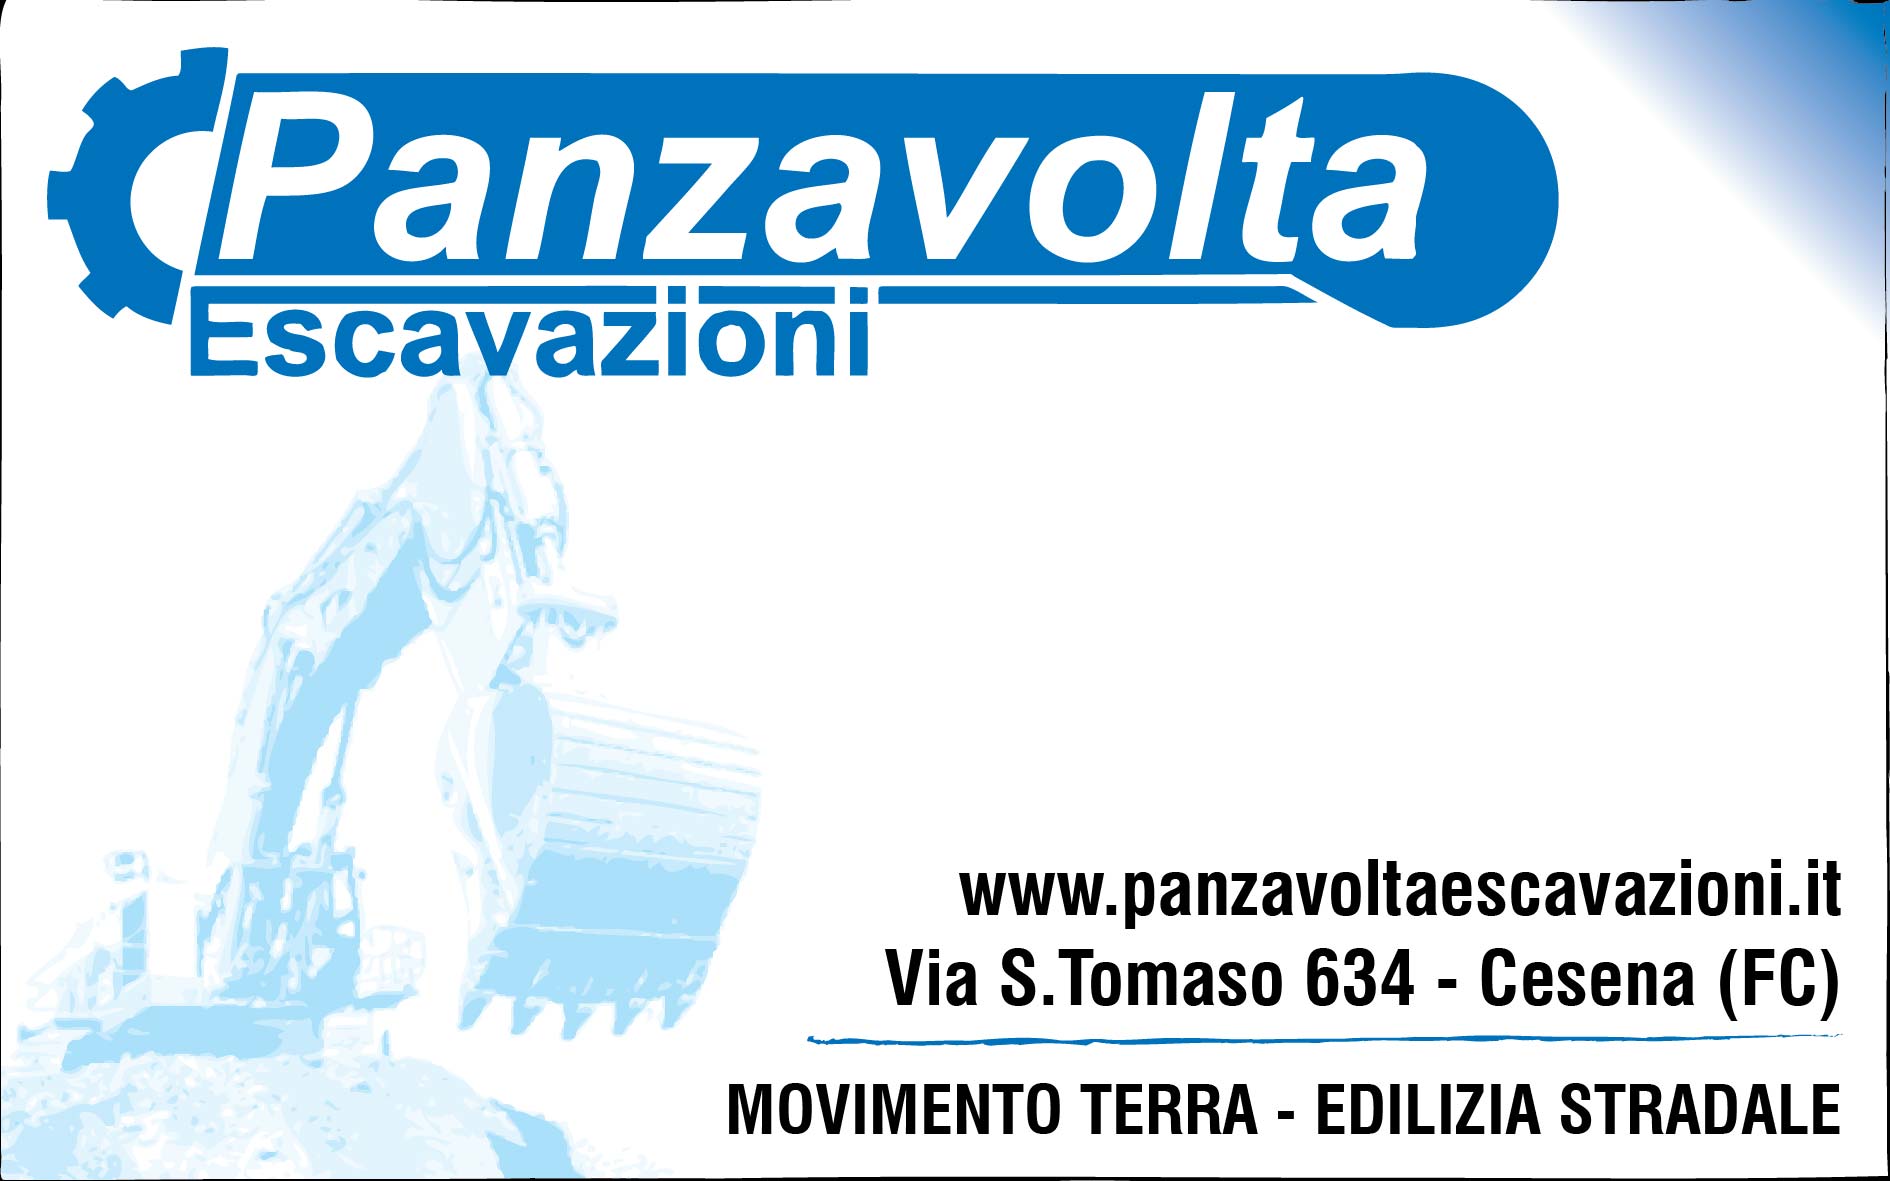 www.panzavoltaescavazioni.it